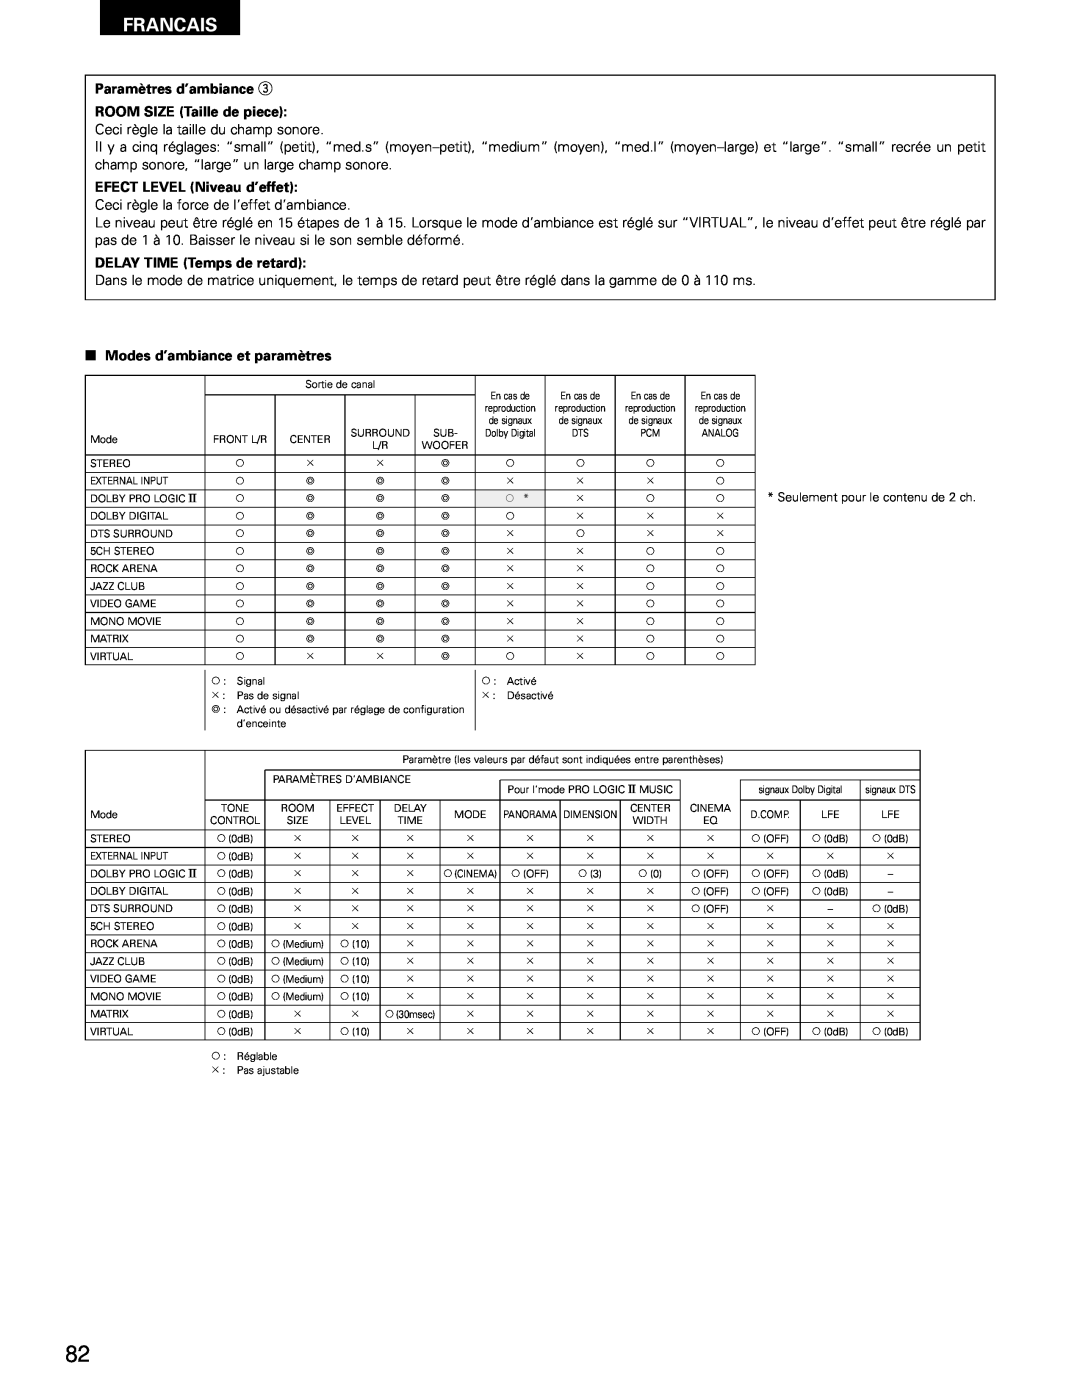 Denon AVR-1602, AVR-682 manual Francais, Paramètres d’ambiance e ROOM SIZE Taille de piece, EFECT LEVEL Niveau d’effet 